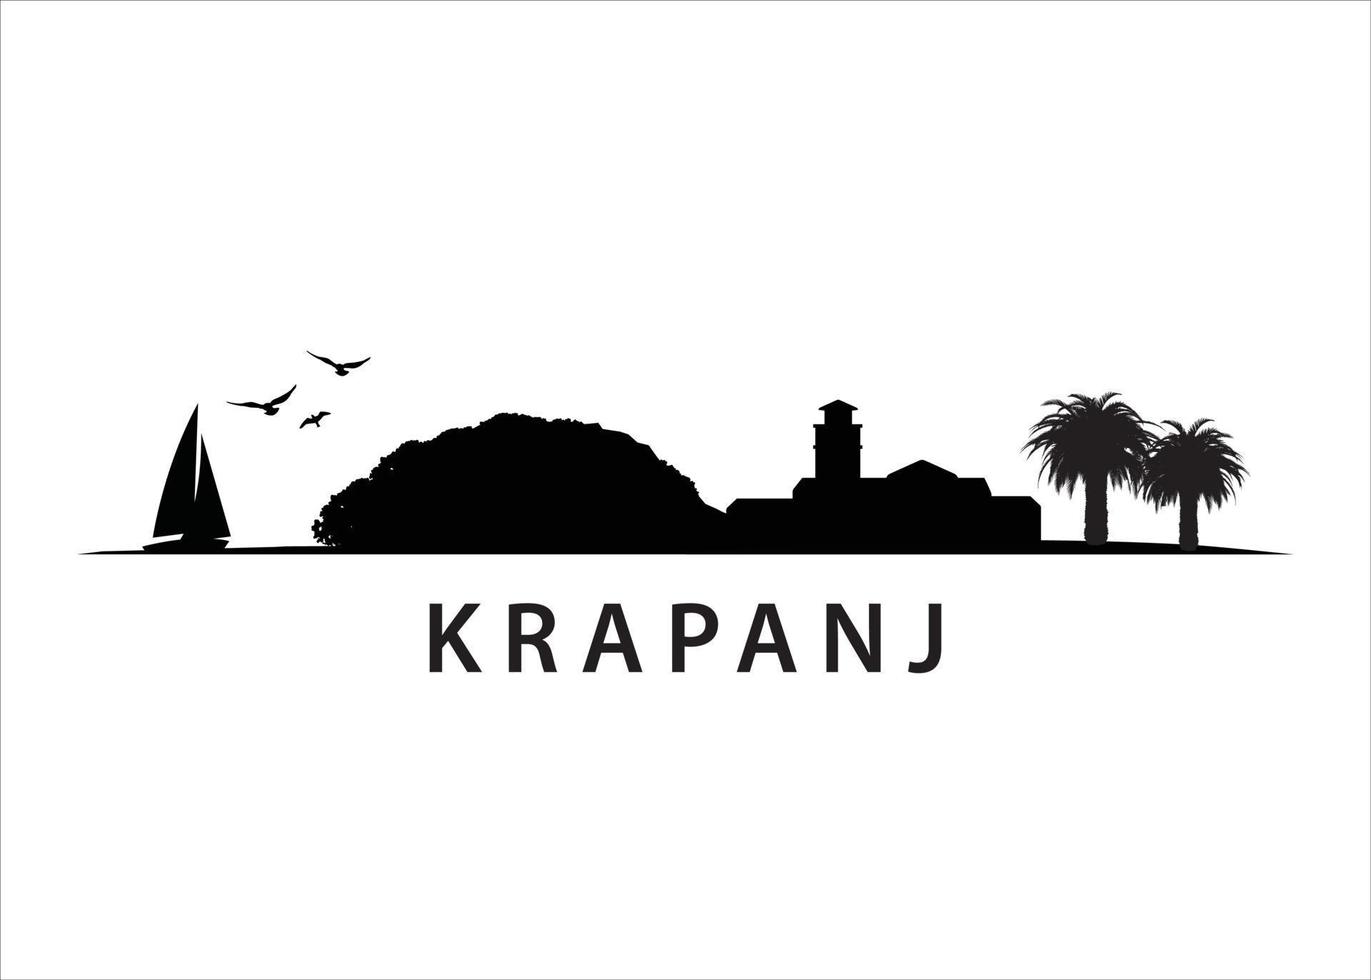 krapanj, paisagem do horizonte da ilha croata vetor